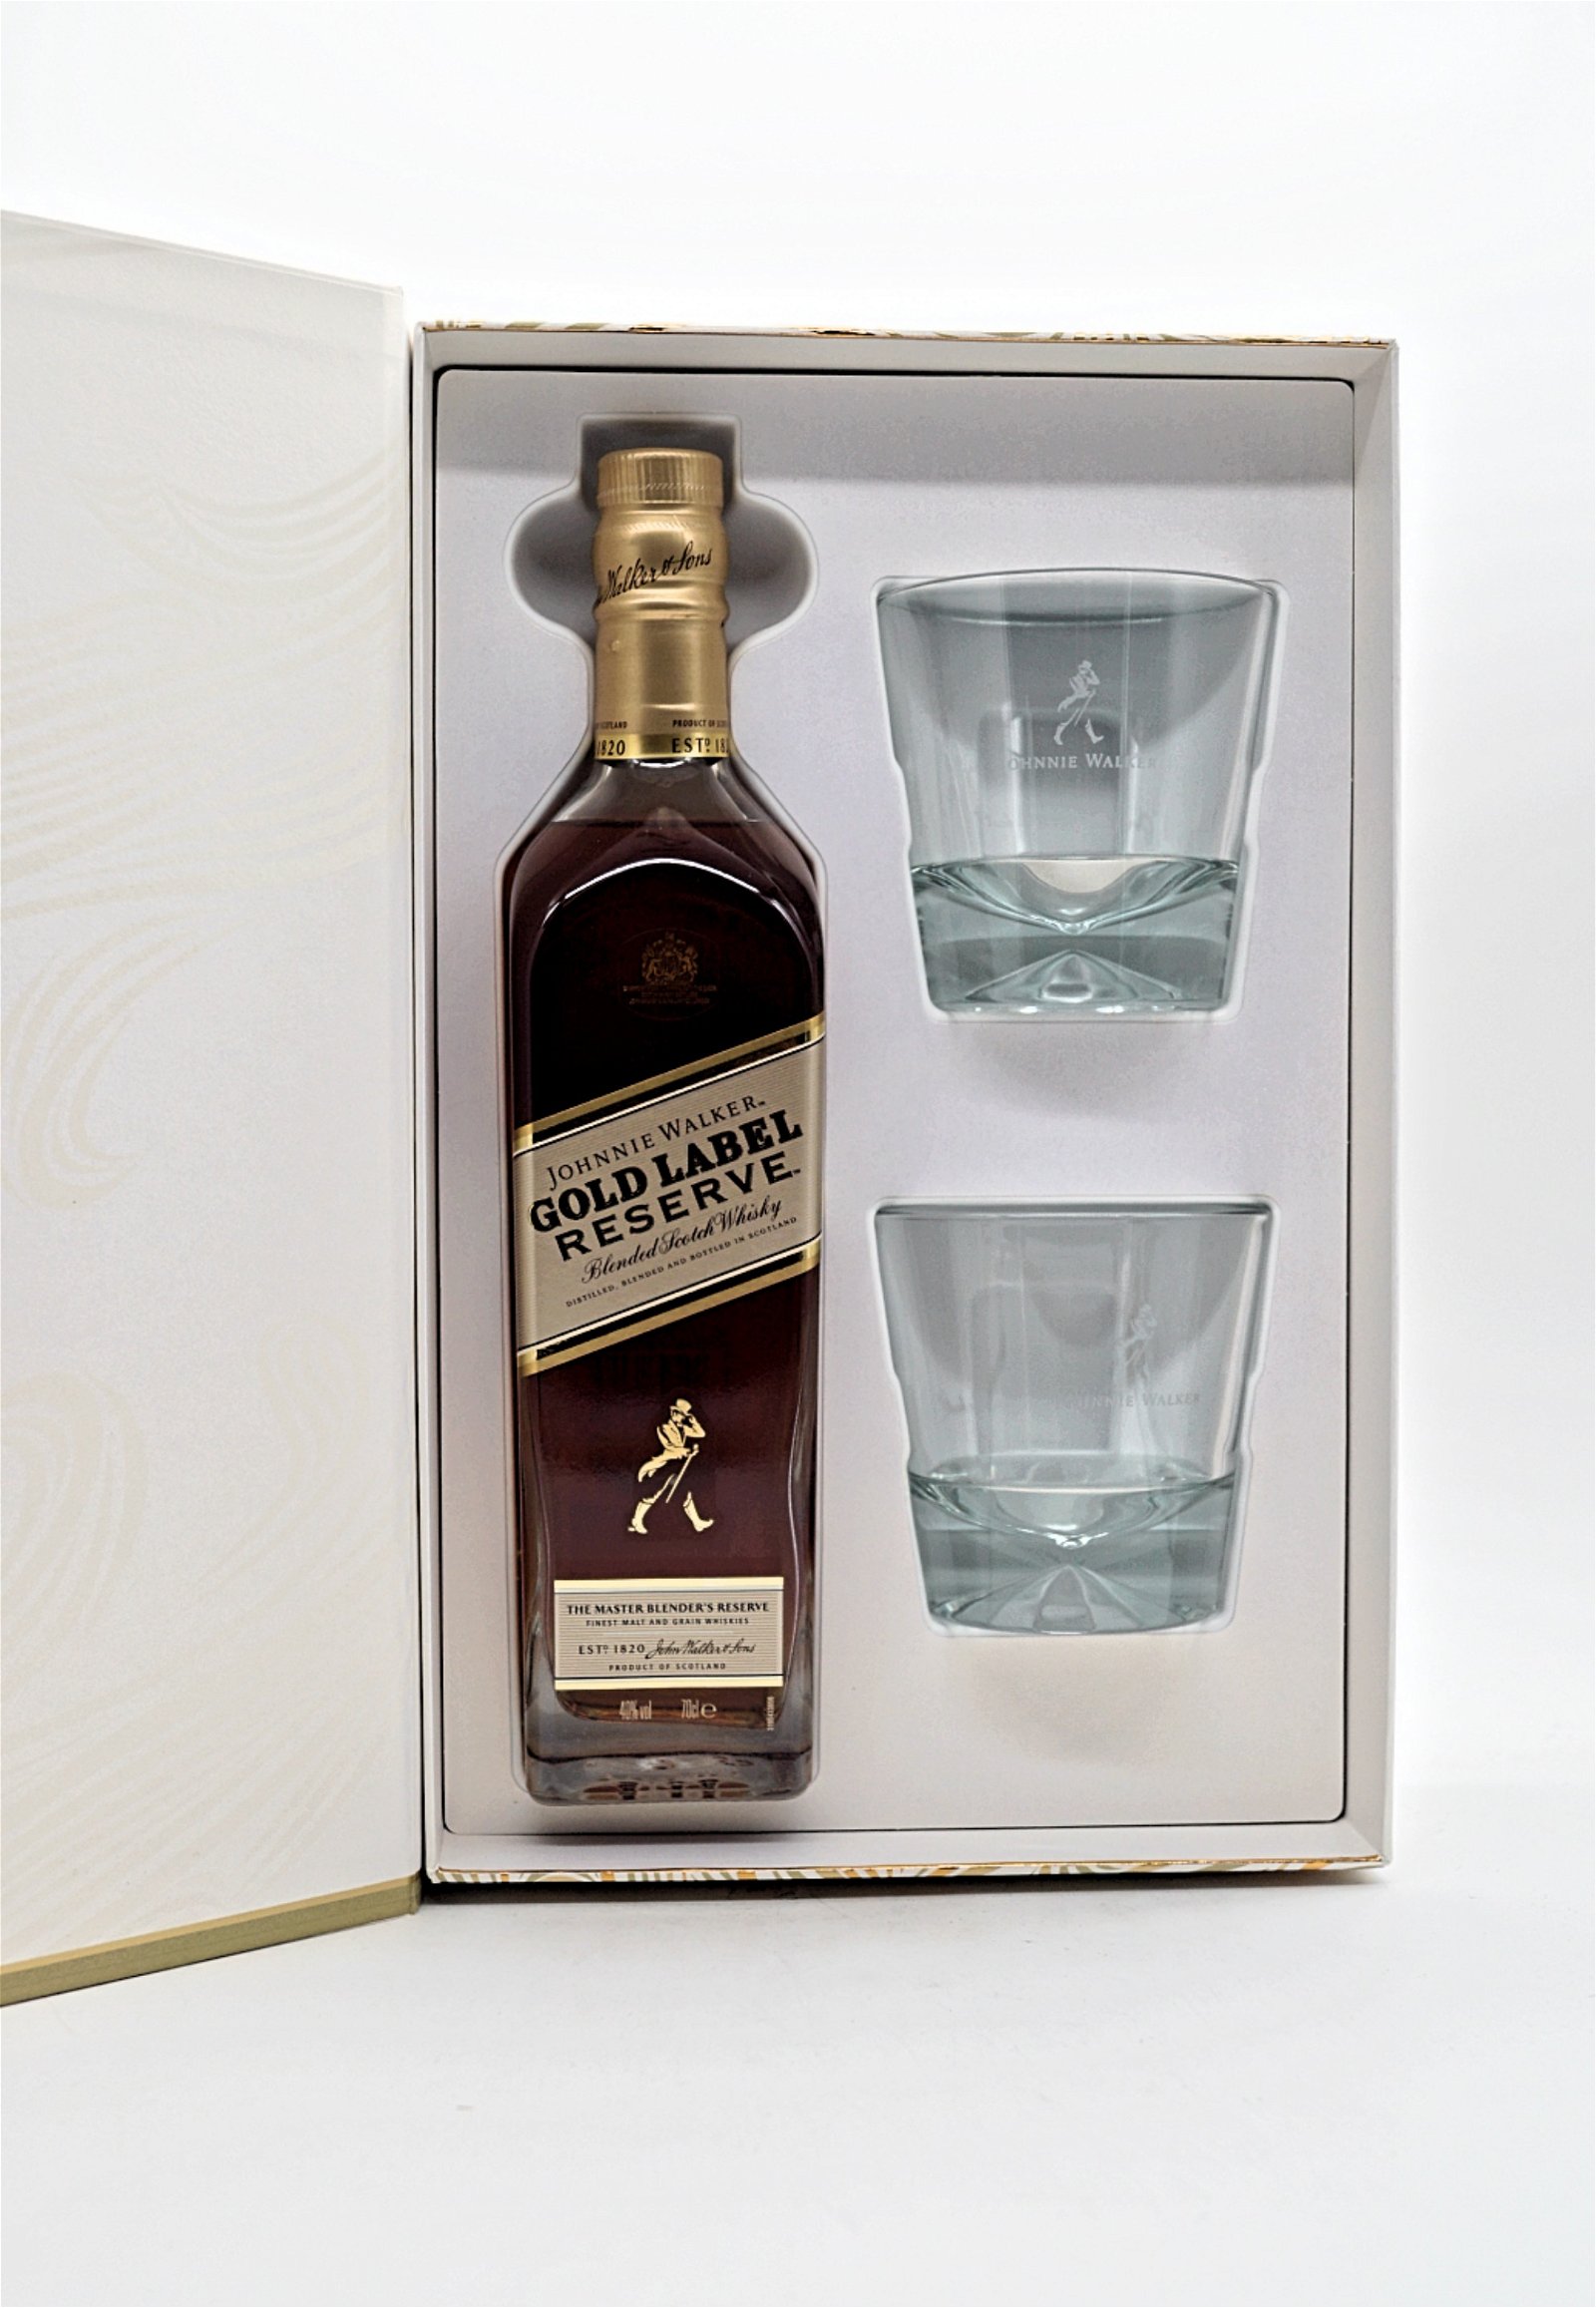 Johnnie Walker Gold Label Reserve Limited Edition Design Blended Scotch Whisky inkl. 2 Gläser